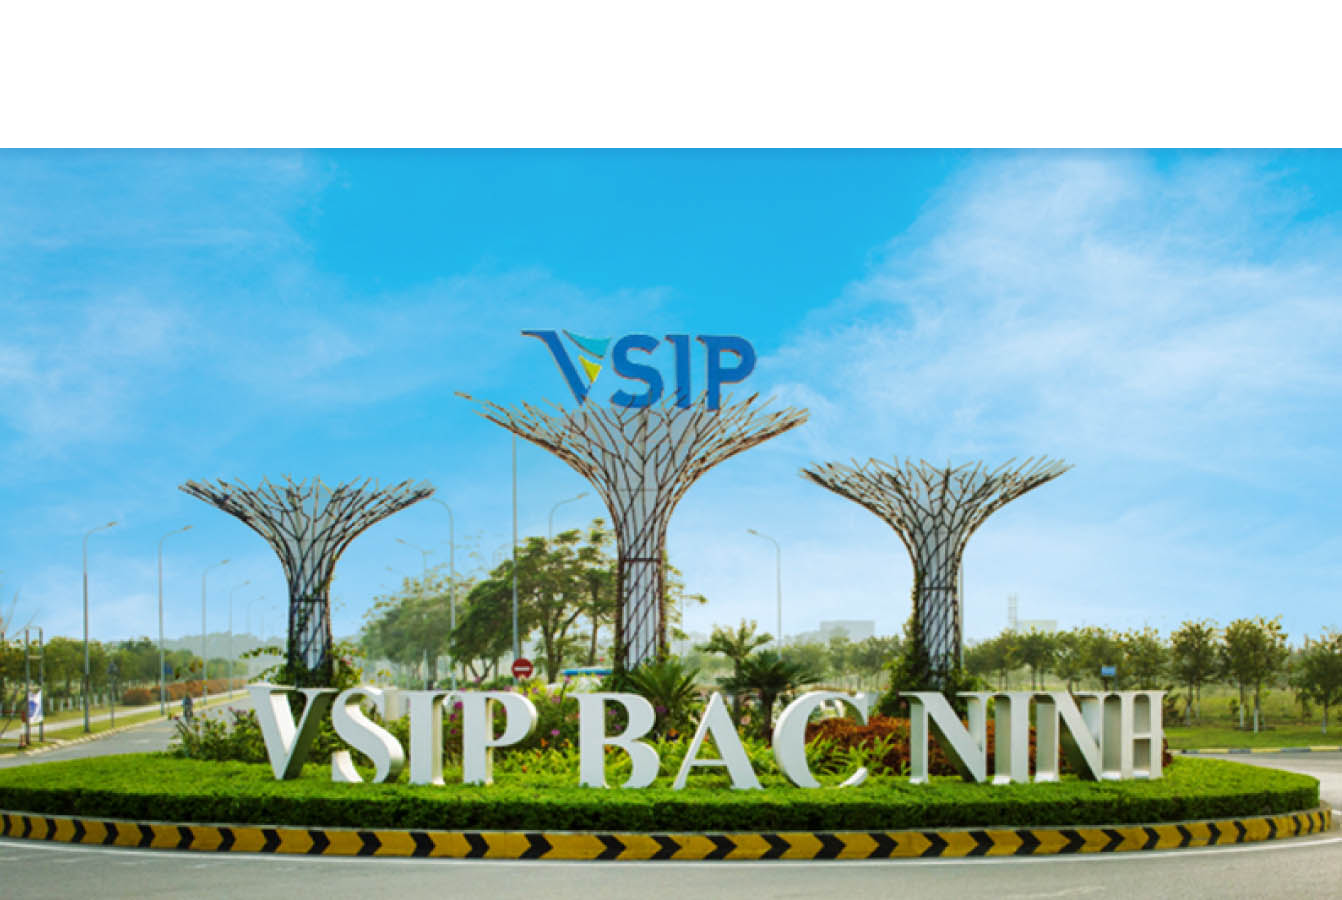 Khu công nghiệp Việt Nam-Singapore Bắc Ninh (VSIP Bắc Ninh)